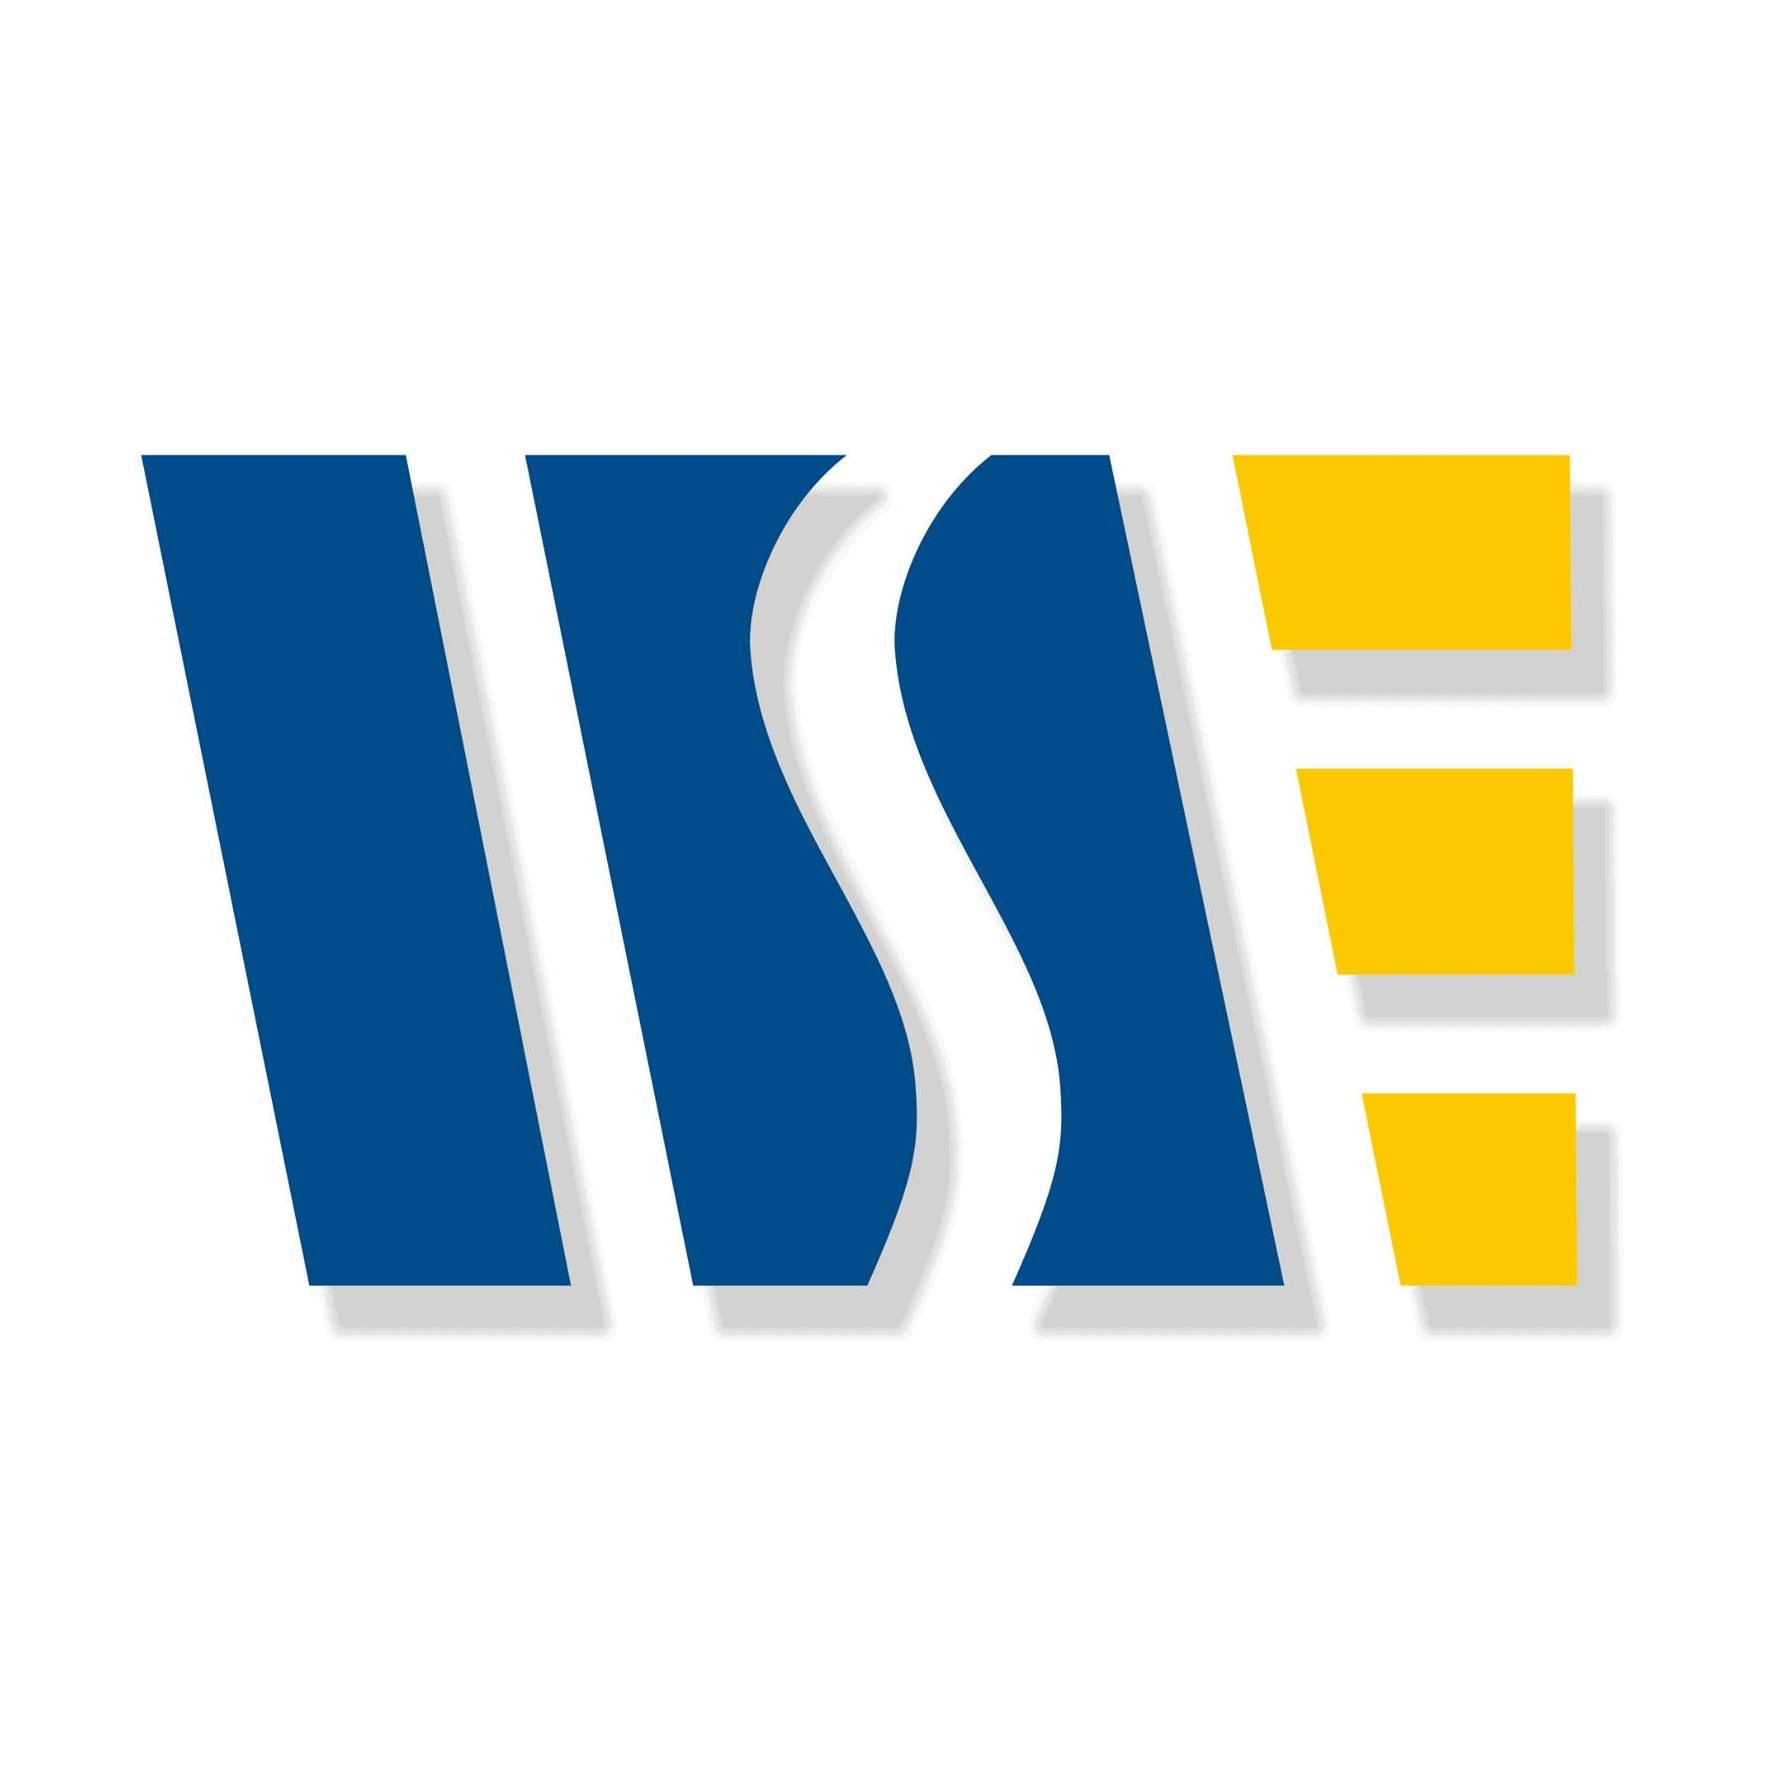 Logo Wyższa Szkoła Społeczno-Ekonomiczna (WSSE) w Gdańsku - Gdańsk